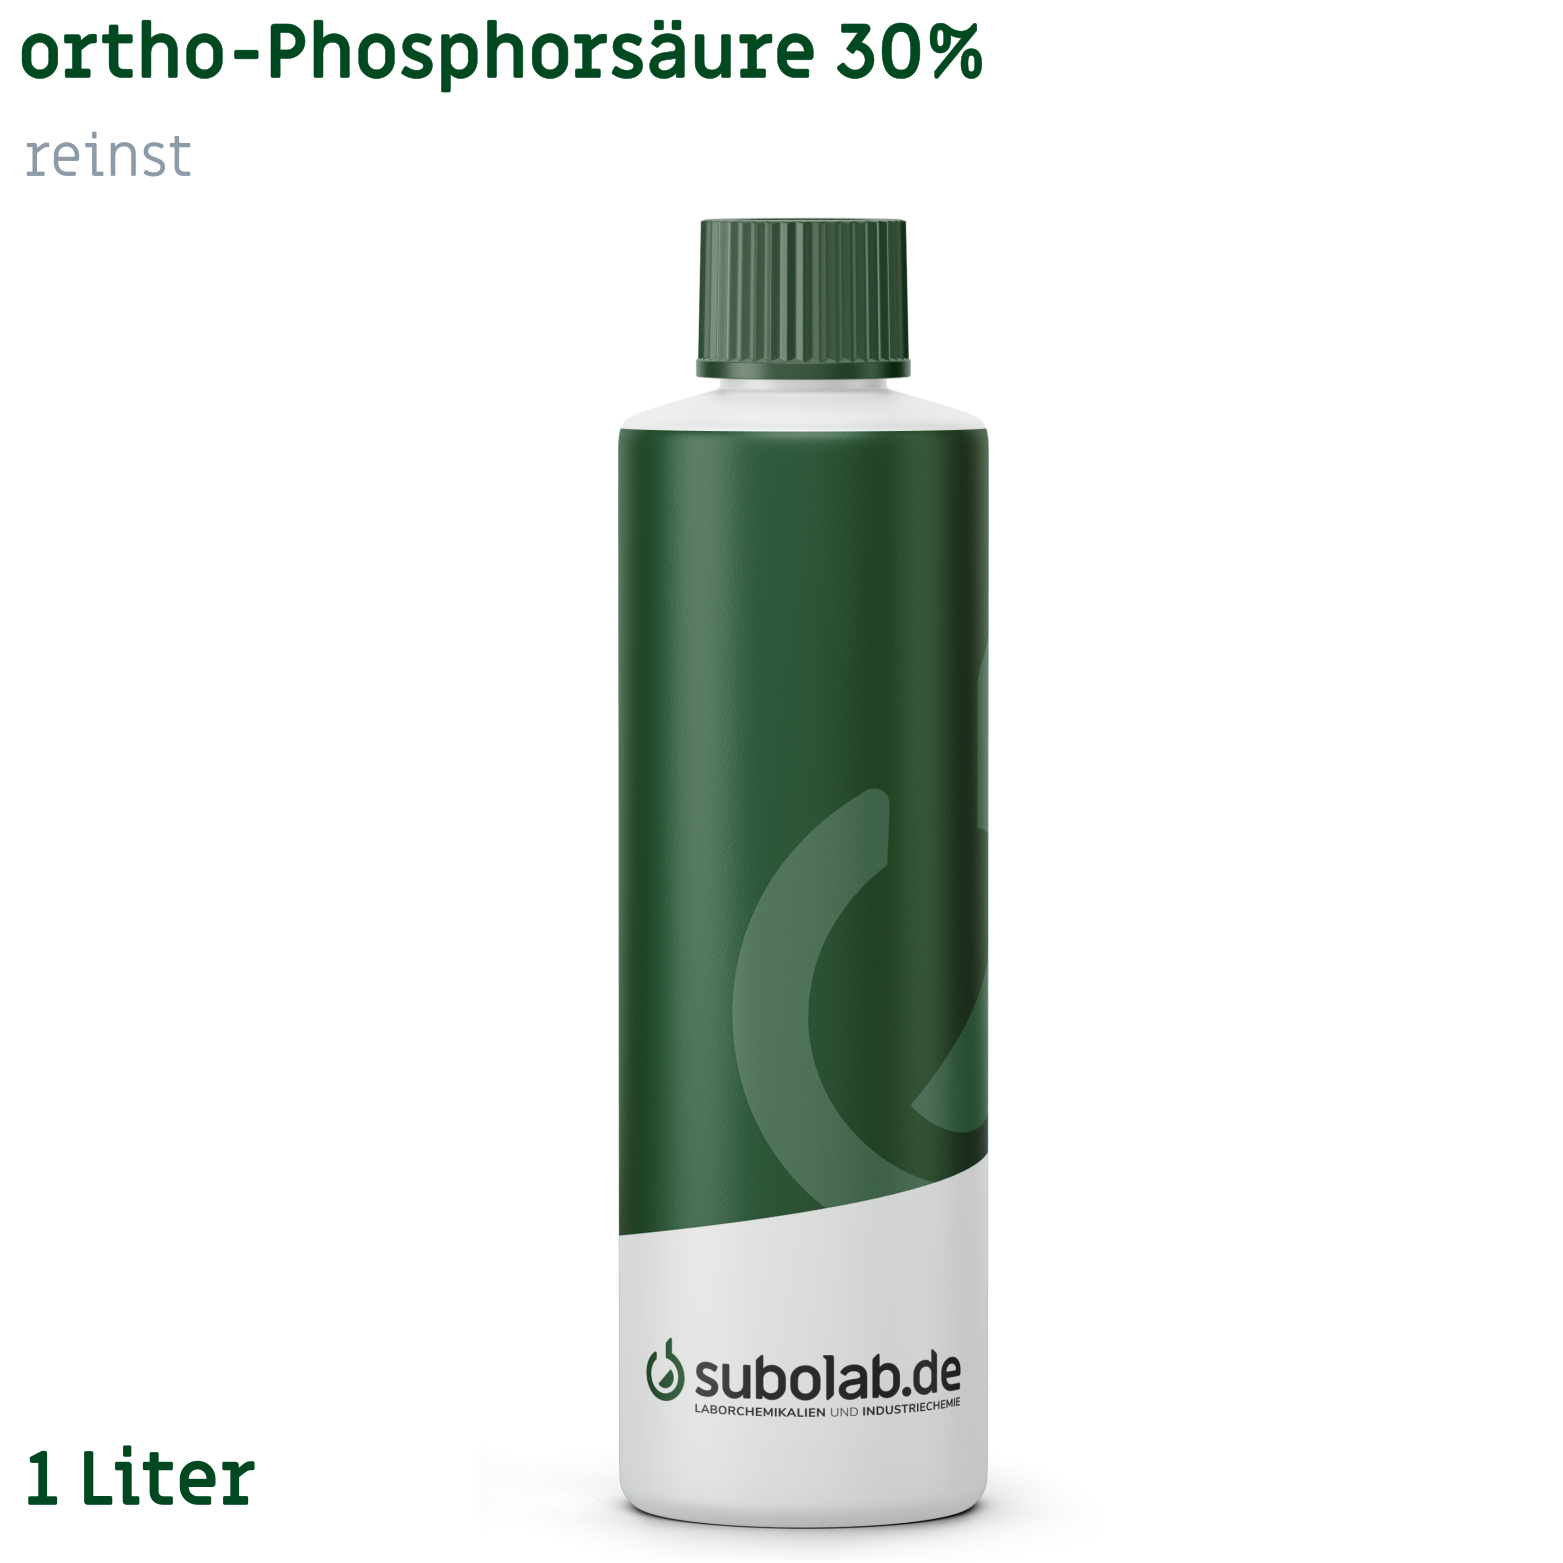 Bild von ortho-Phosphorsäure 30% reinst (1 Liter)